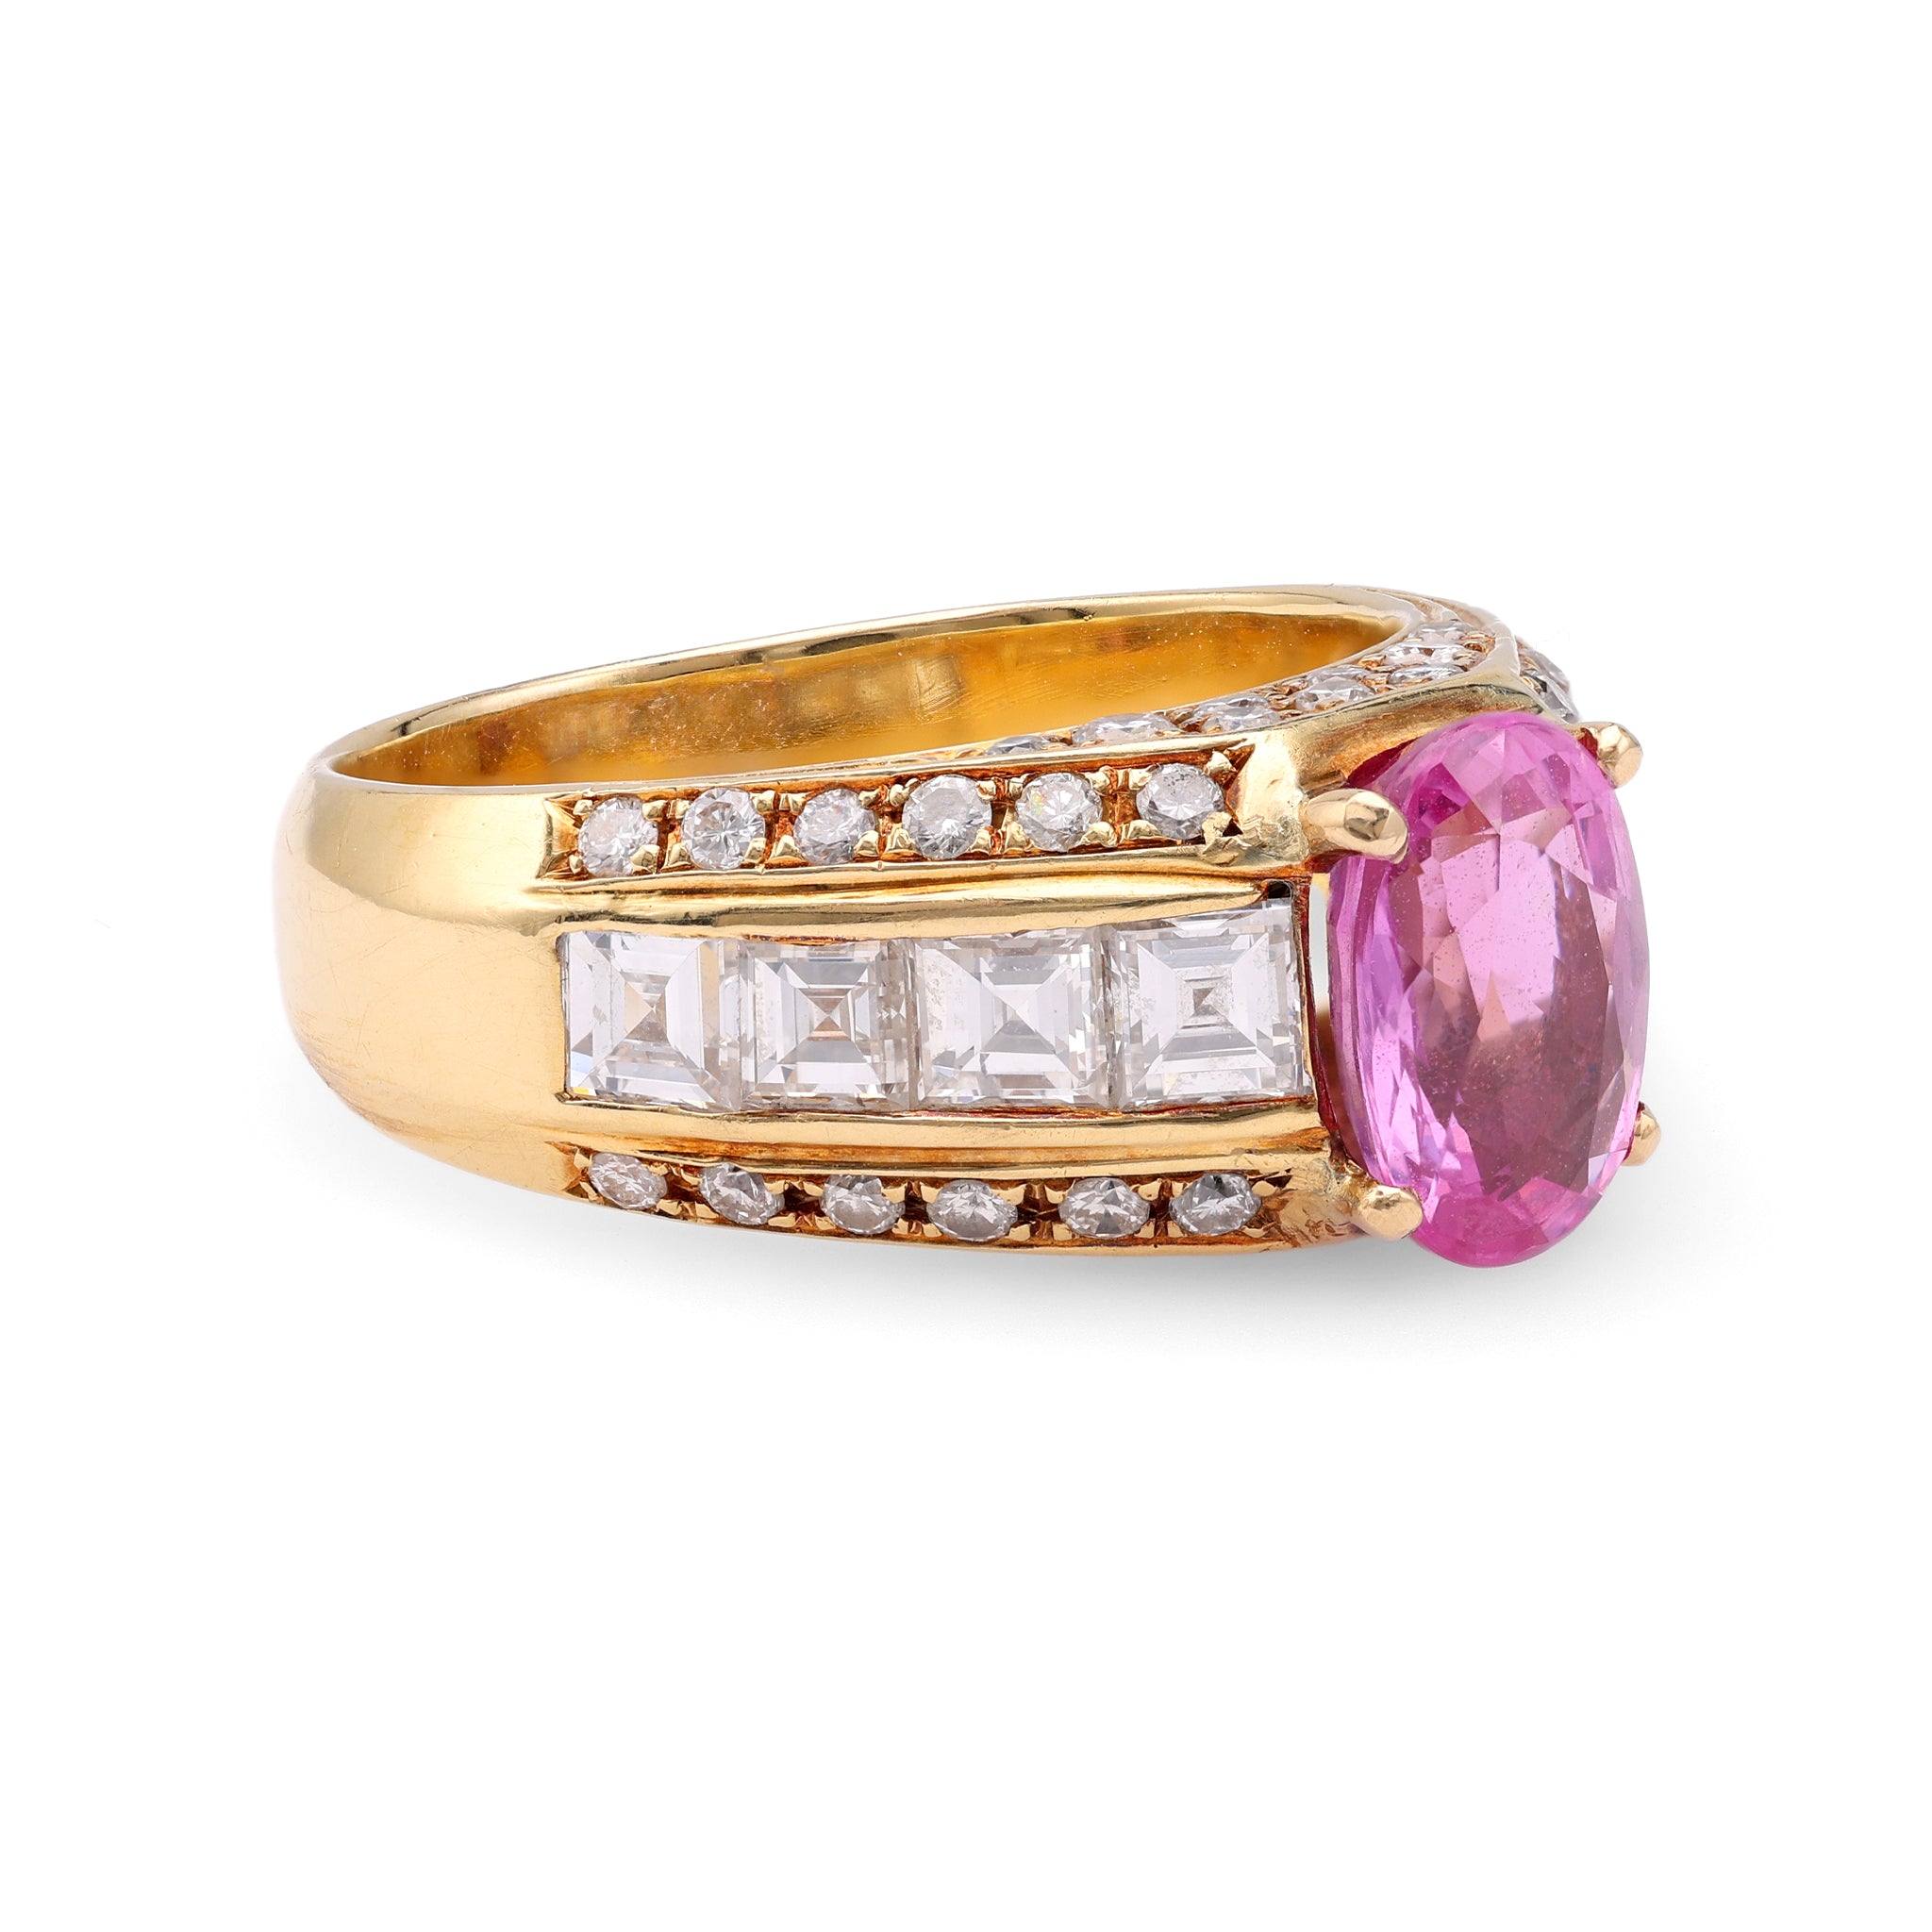 Vintage GIA 1.94 Carat Madagascan Purplish Pink Sapphire Diamond 18k Yellow Gold Ring Rings Jack Weir & Sons   